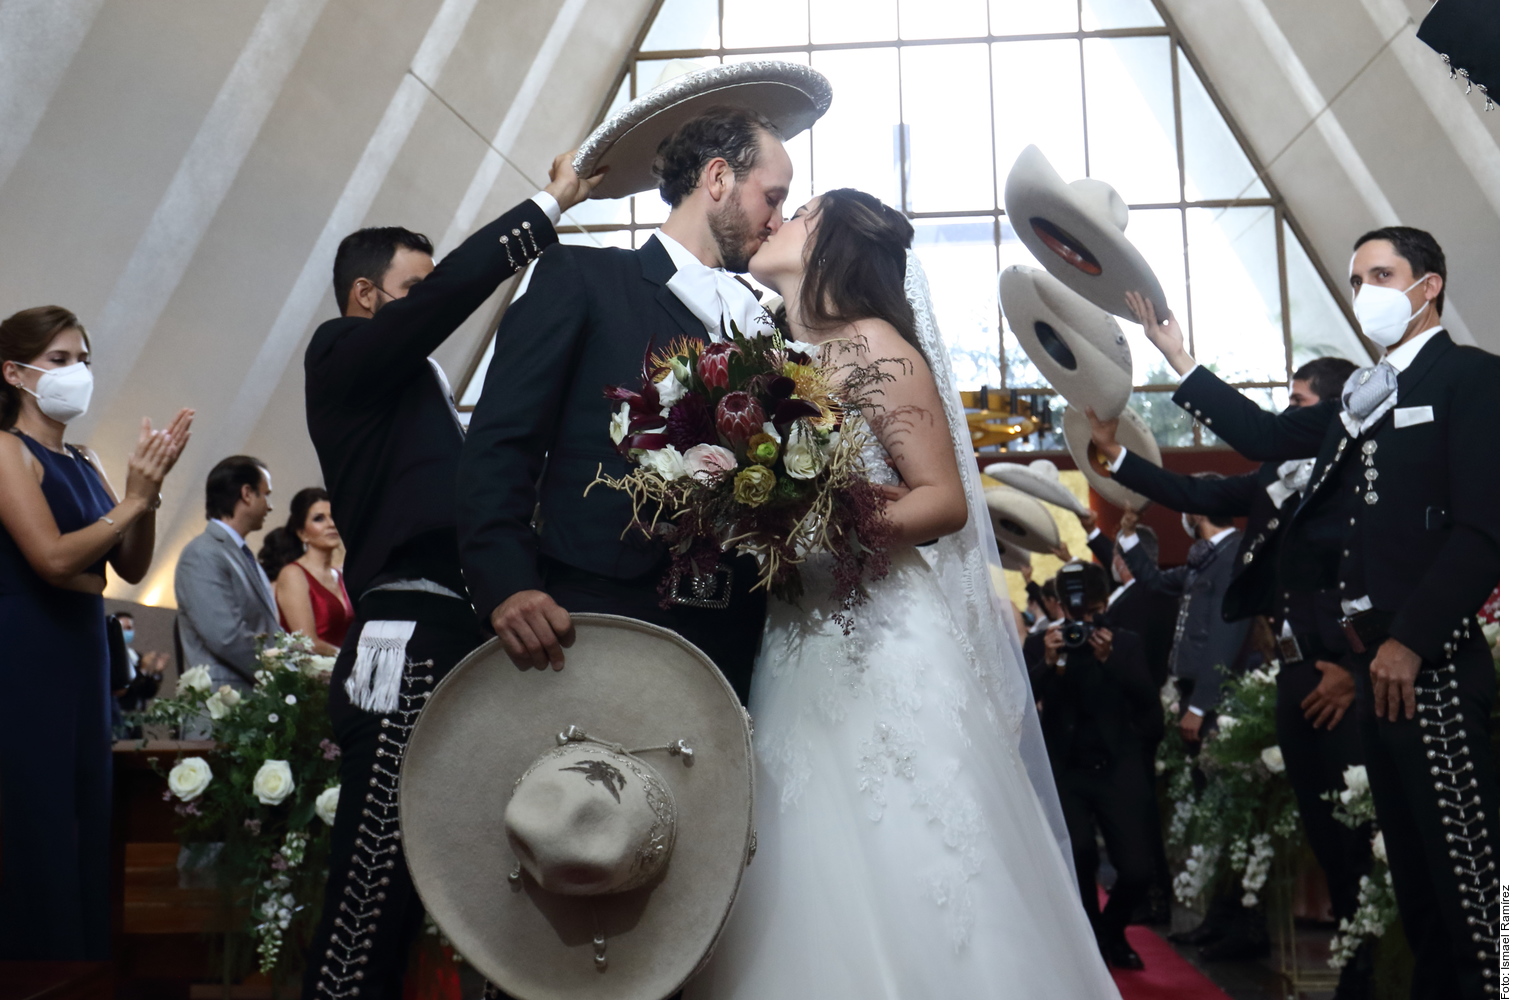 This was Camila Fernández's wedding: “El Potrillo” sang to the bride and groom